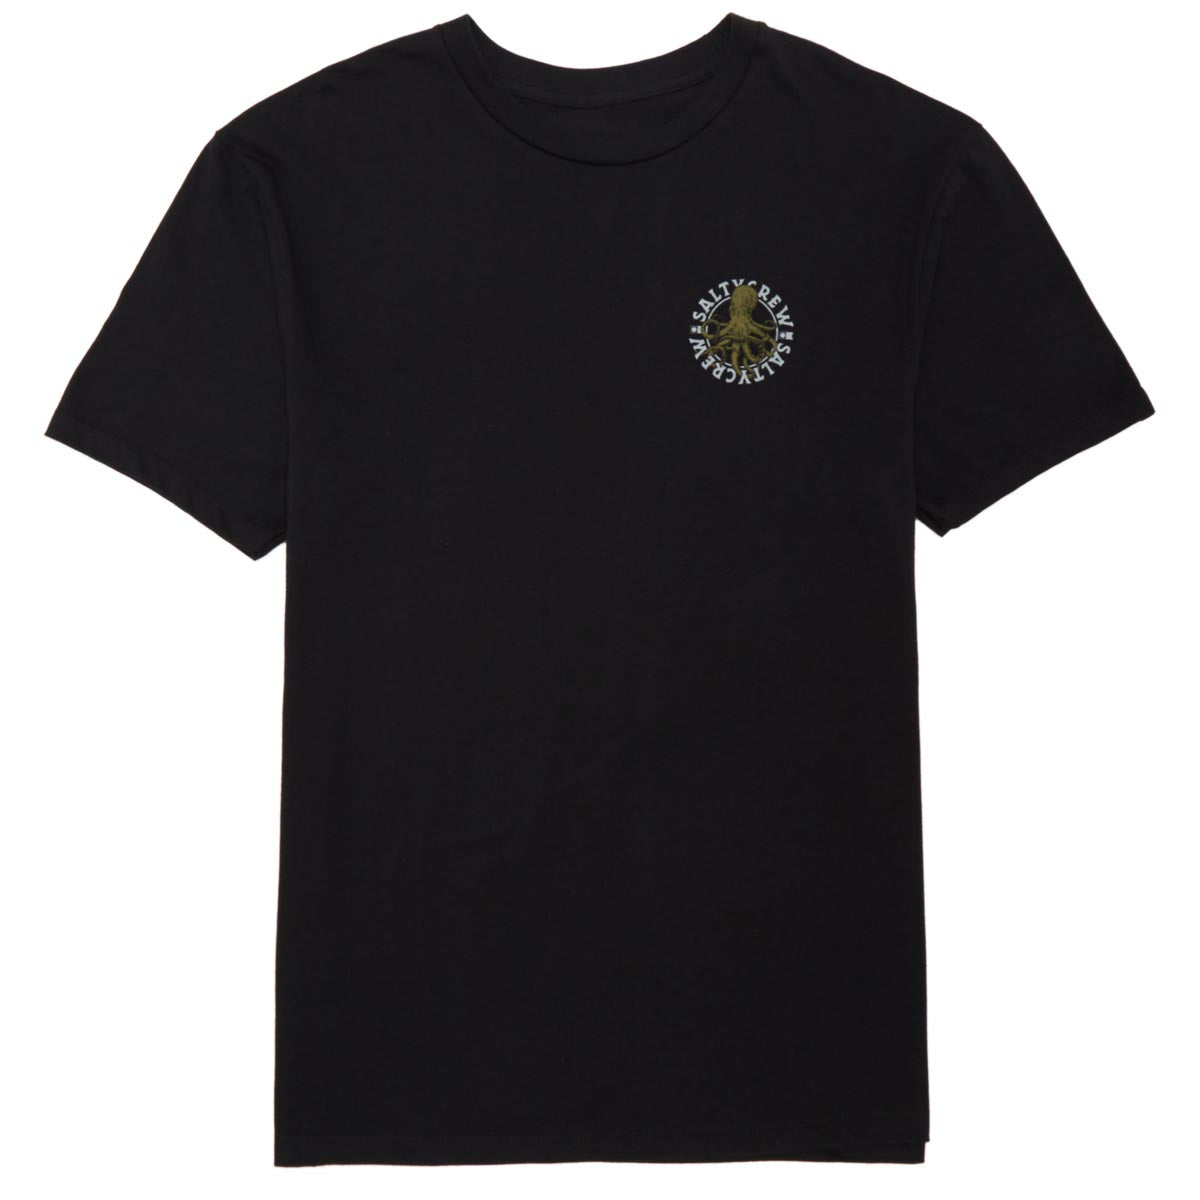 Salty Crew Tentacles Premium T-Shirt - Black image 4